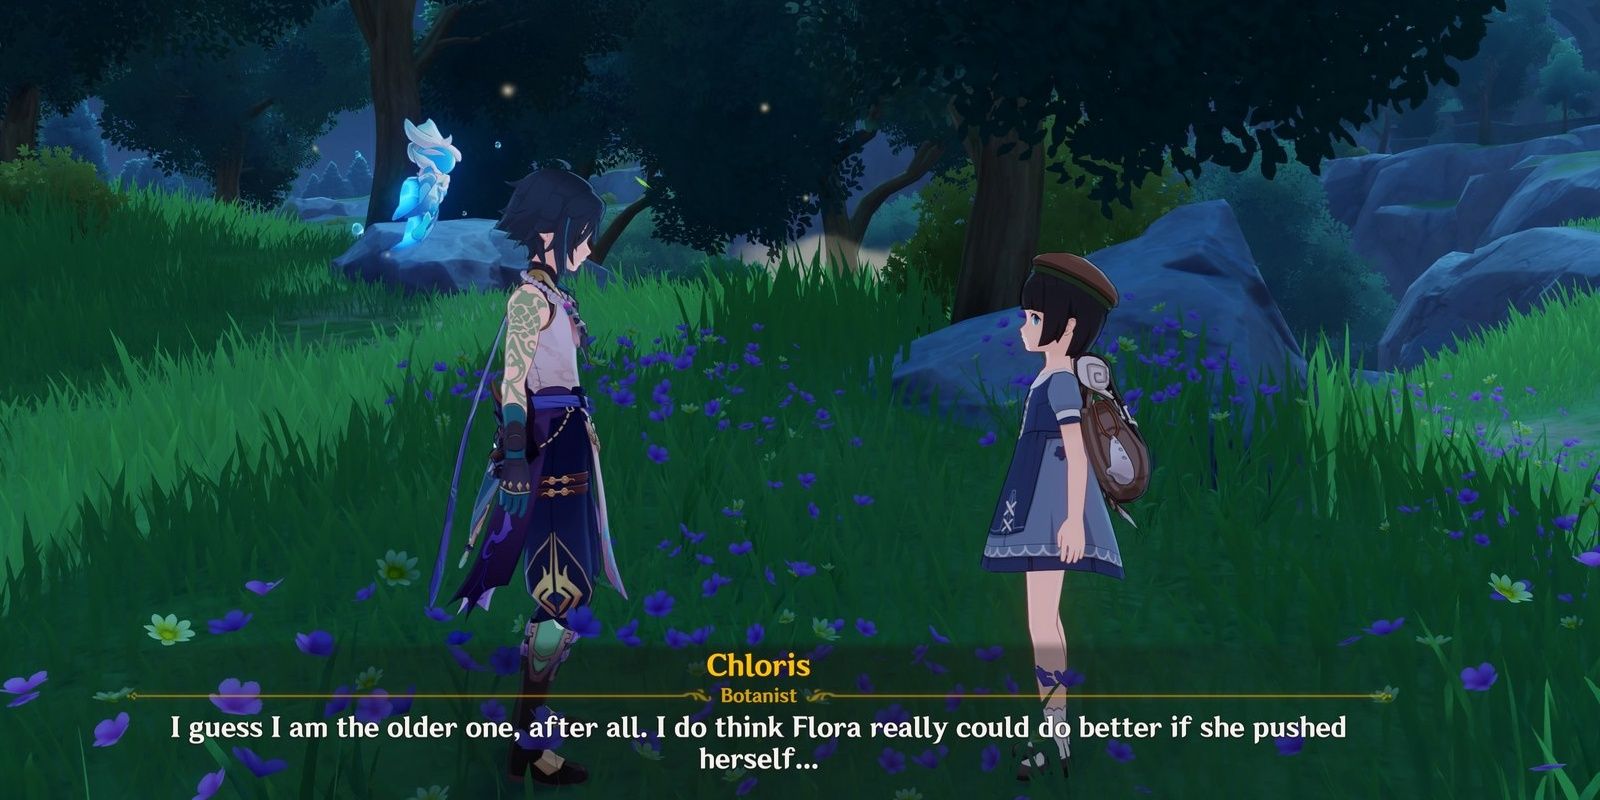 Chloris Wanting Flora to Expand